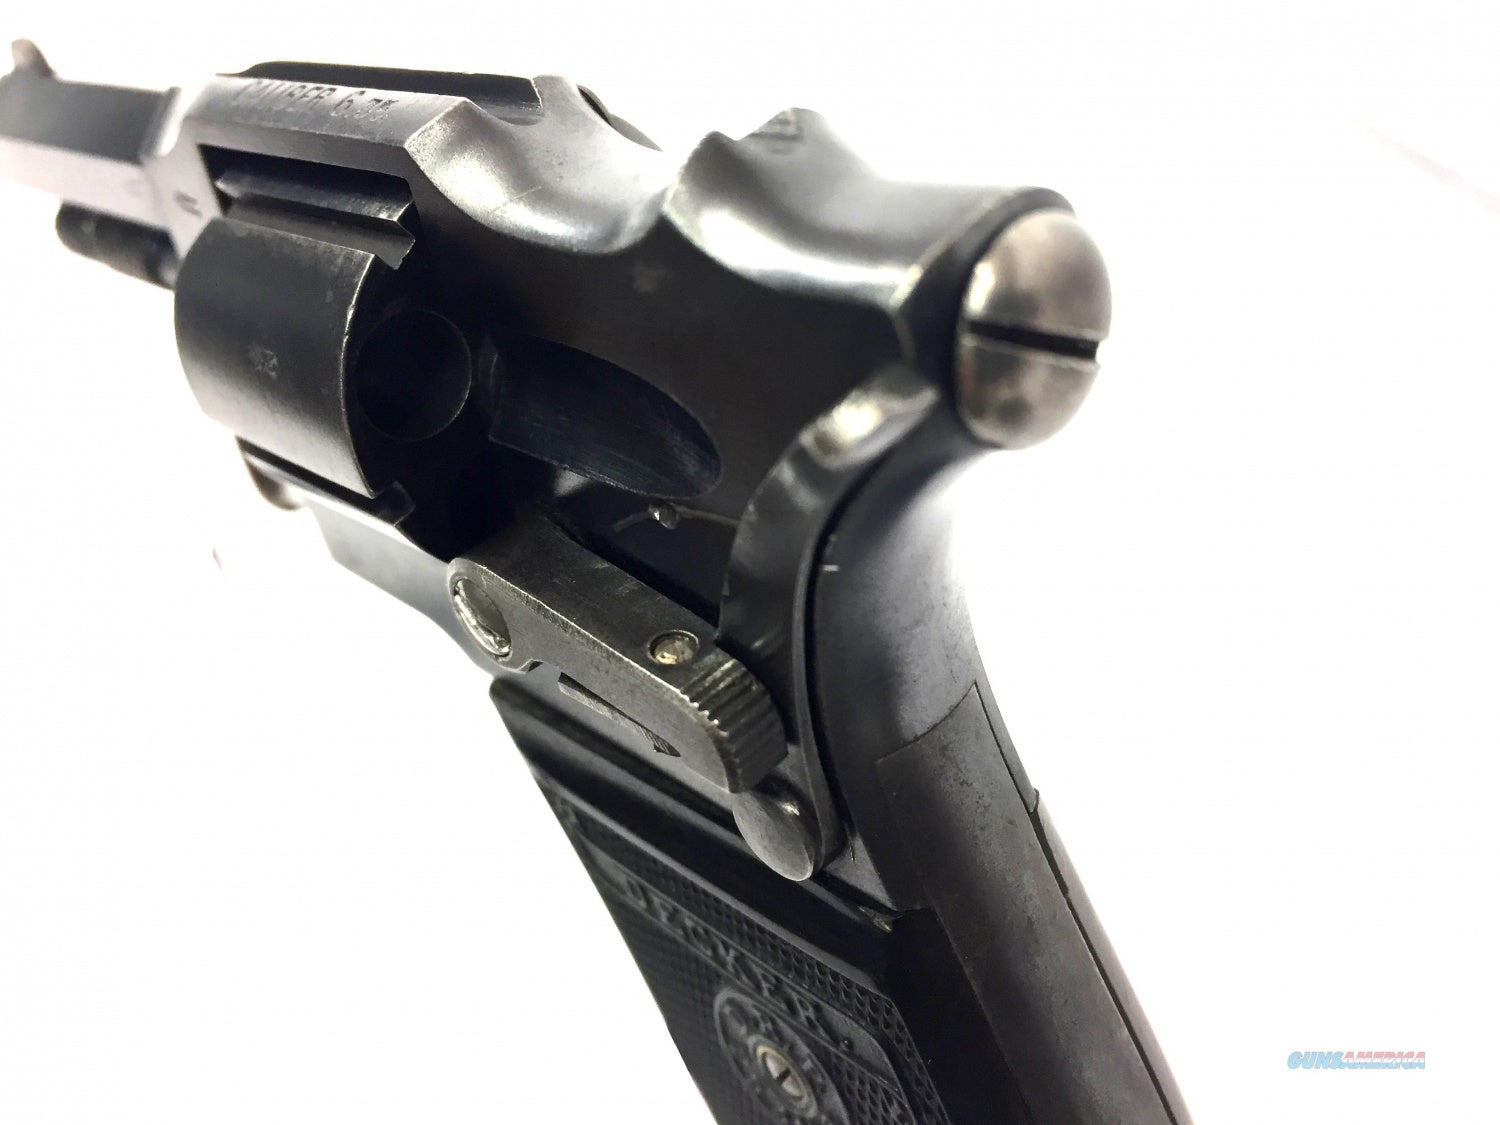 Wheelgun Wednesday: That's not a Squirt Gun - The Decker Pocket Revolver